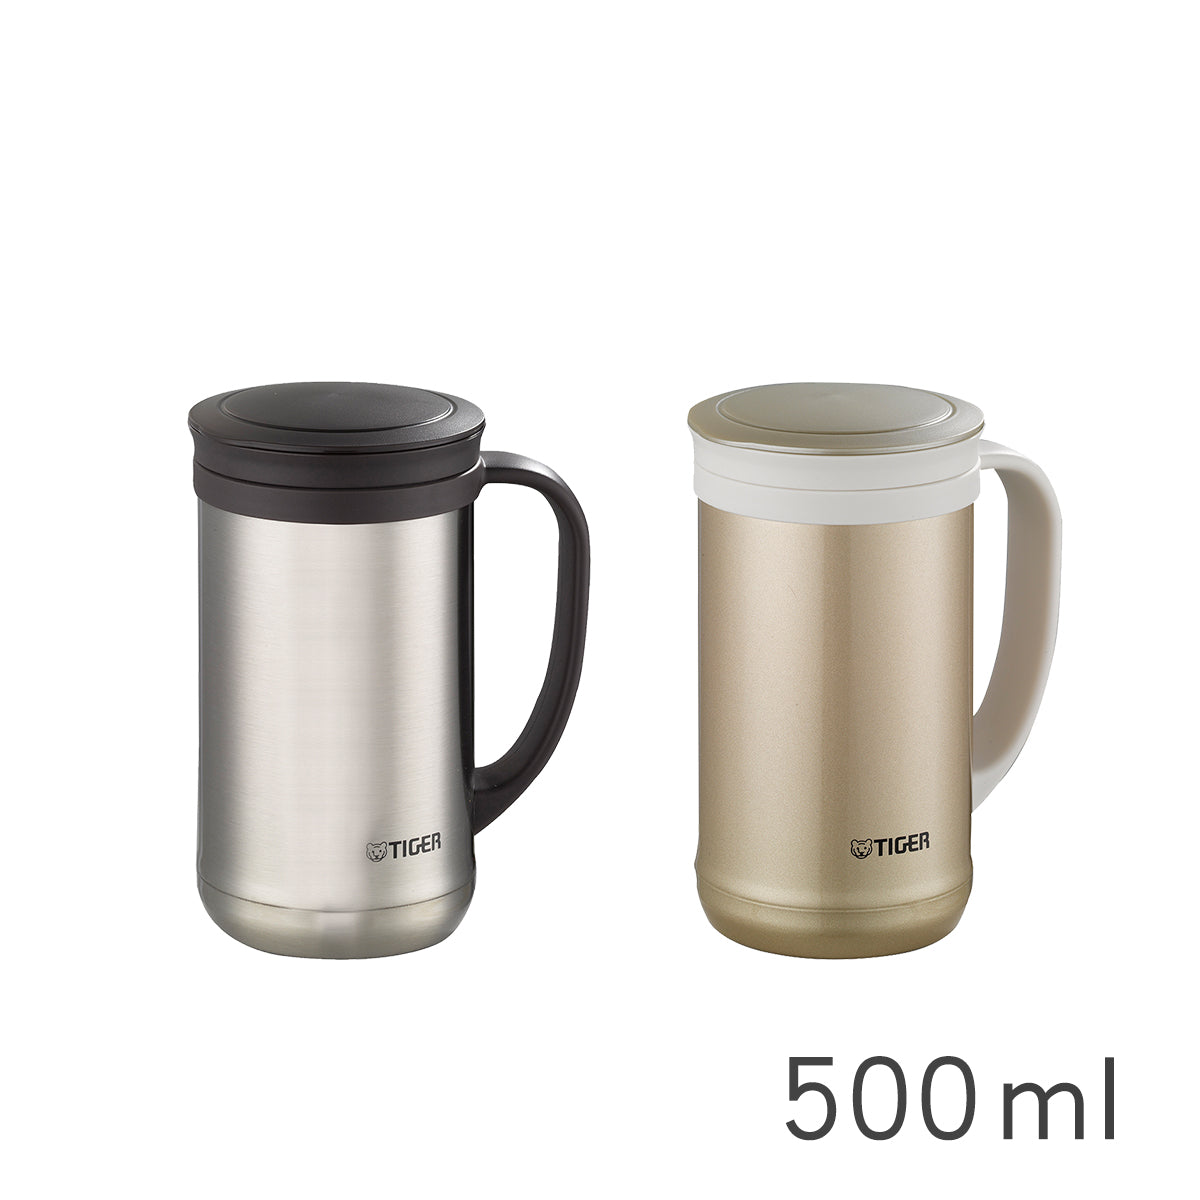 不鏽鋼真空保溫辦公杯 茶濾網系列500ml (MCM-T050)